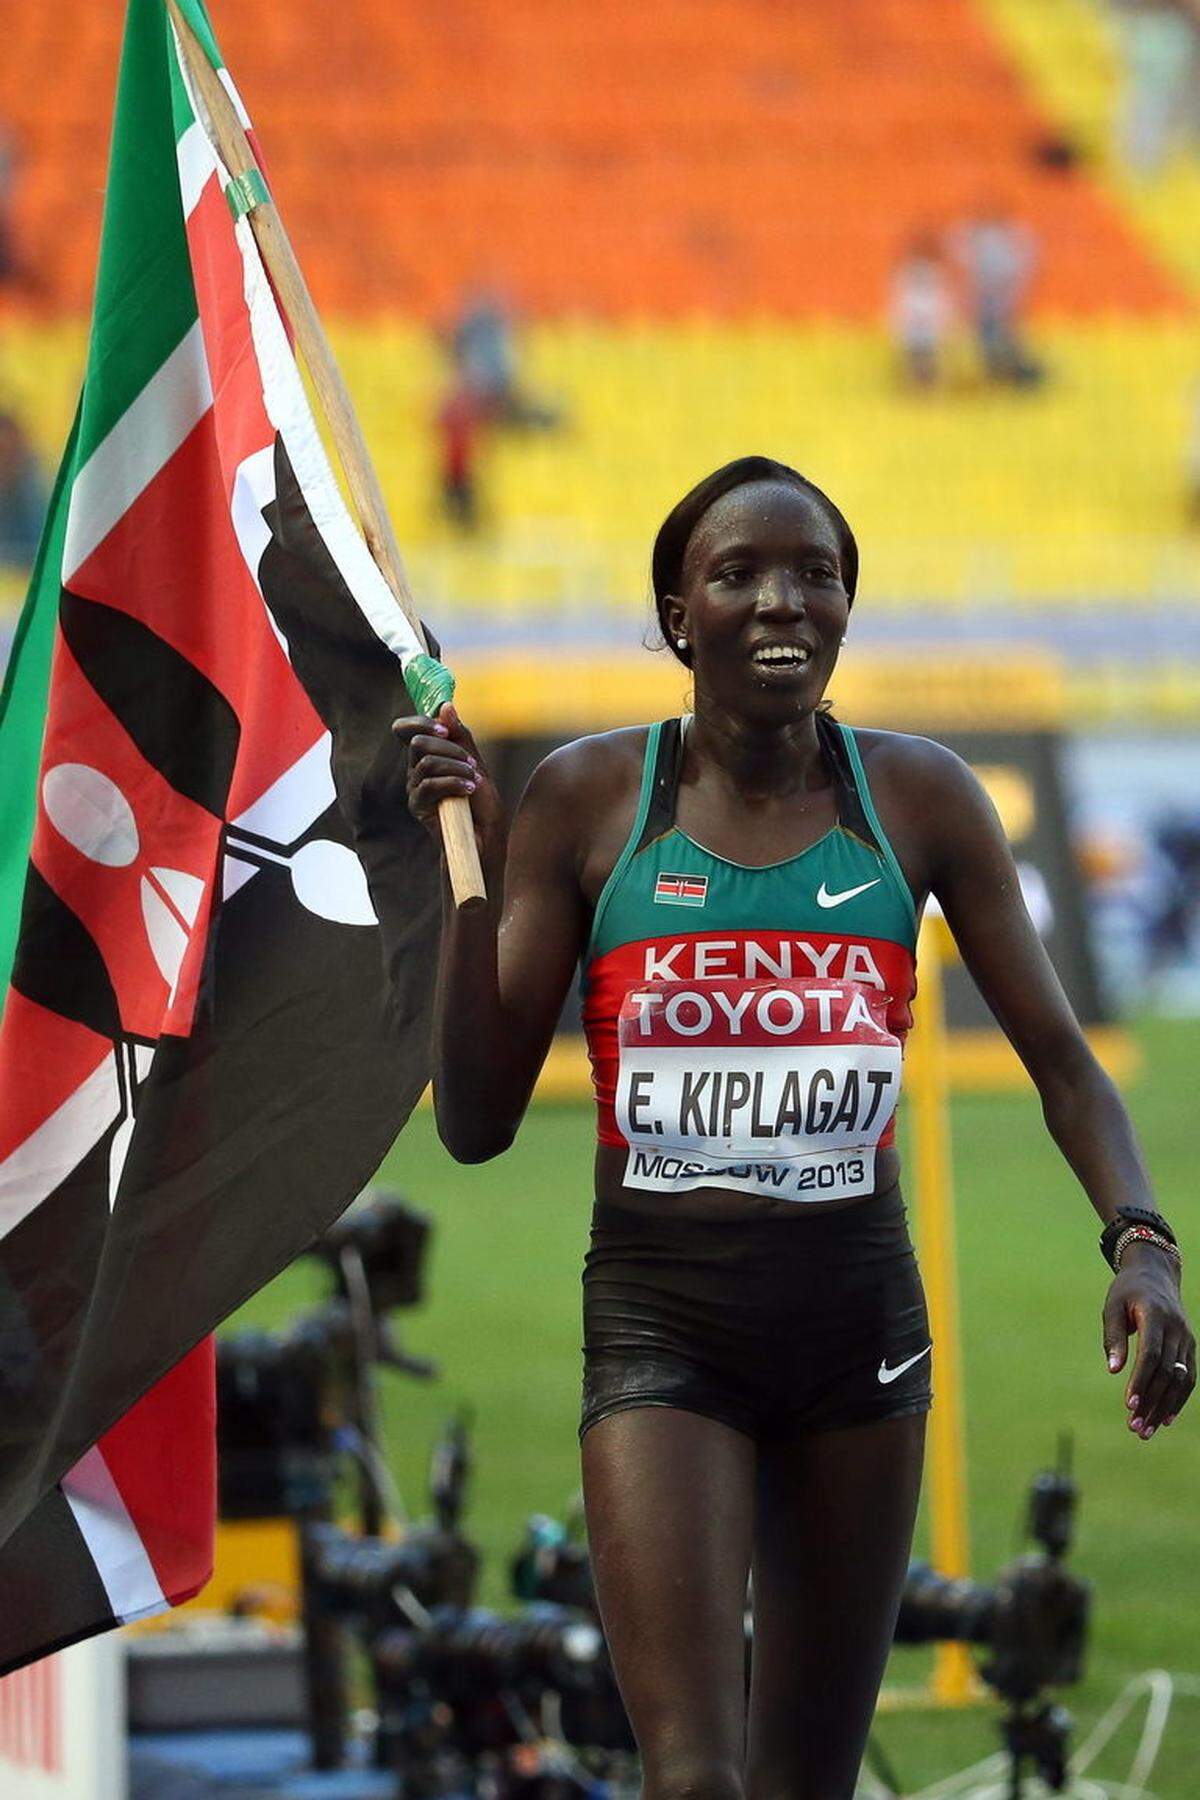 Bei den Frauen setzt sich die Routine durch. Die 33-jähirgen Kenianerin Edna Kiplagat, bereits zweifache Mutter, gewinnt über Marathonstrecke vor der lange führenden Italienerin Valeria Starneo. Die 37-Jährige bleibt nur 14 Sekunden hinter Kiplagat, die in 2:25,44 Stunden die erste Goldmedaille der WM gewinnt.